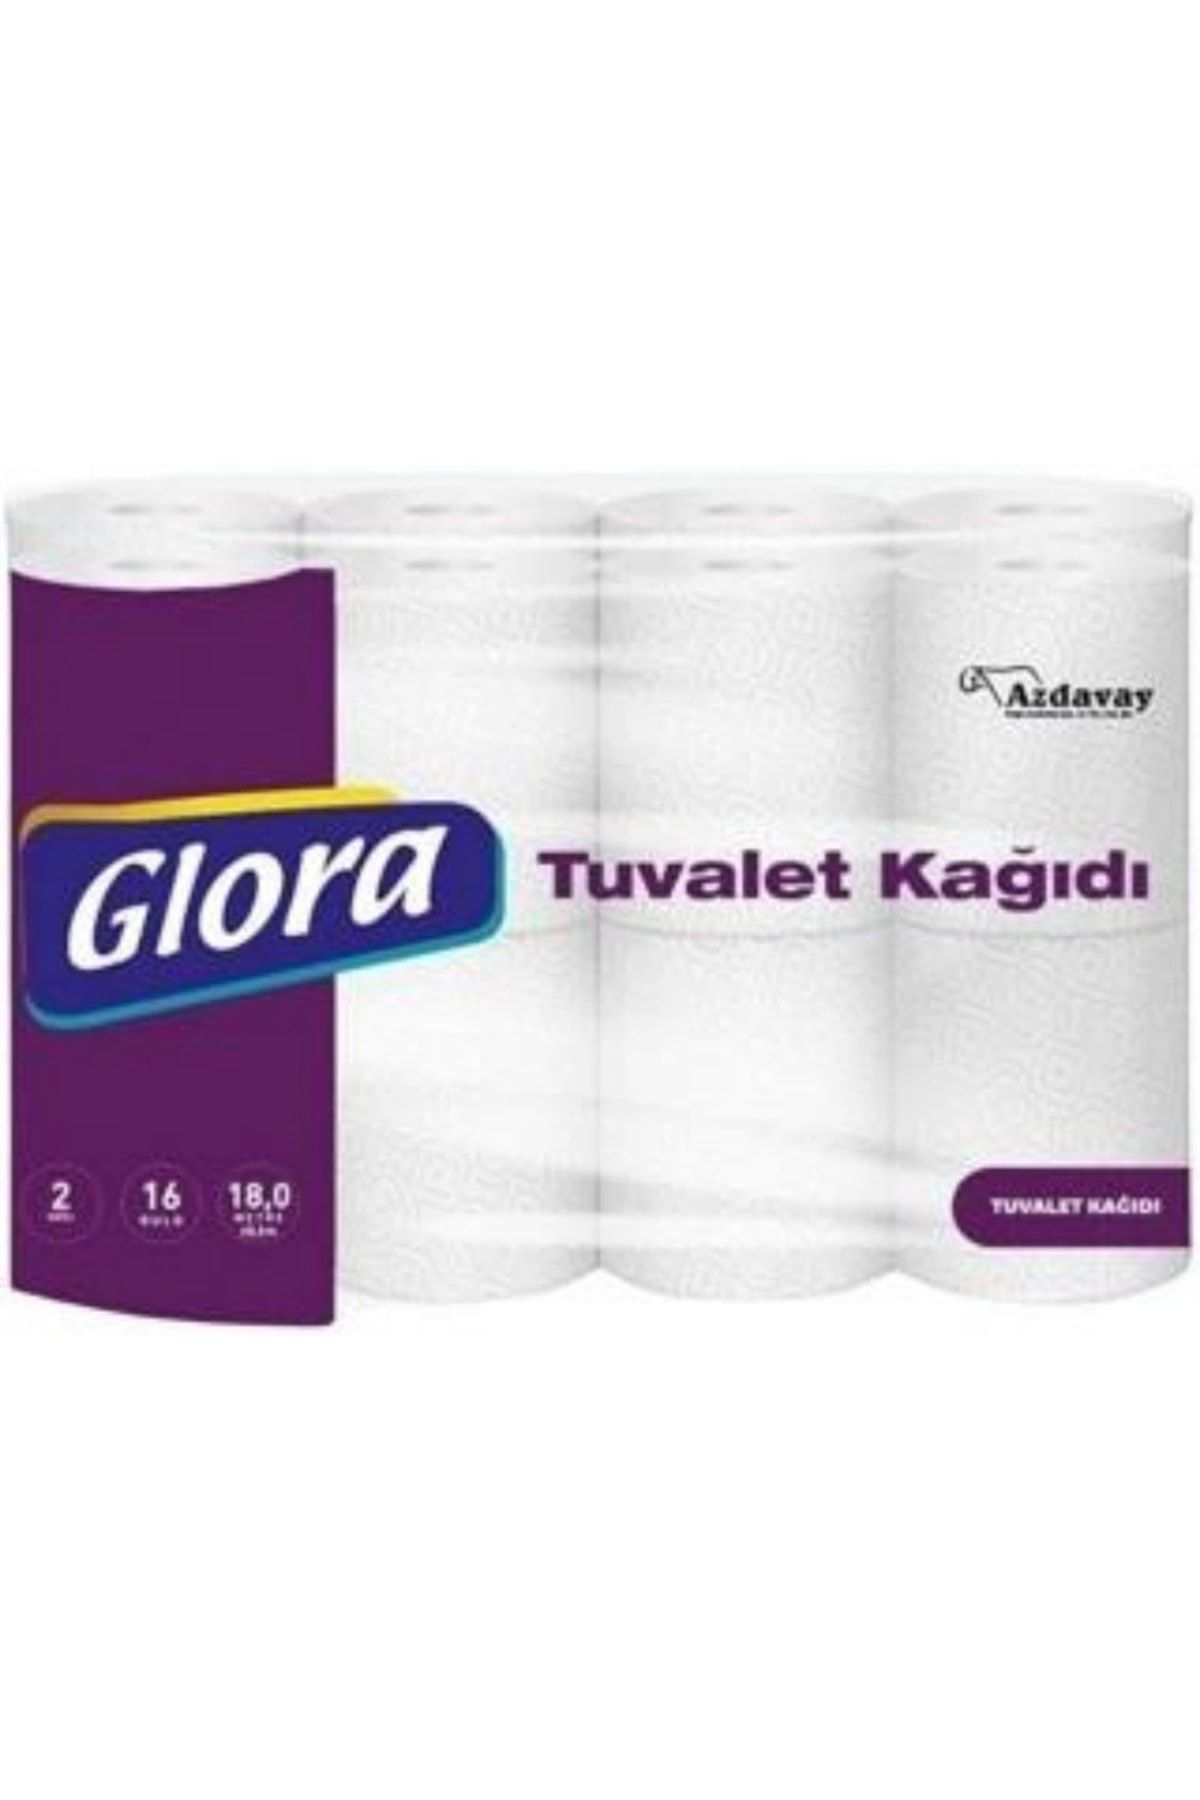 Glora Tuvalet Kağıdı 2 Katlı 48 Adet